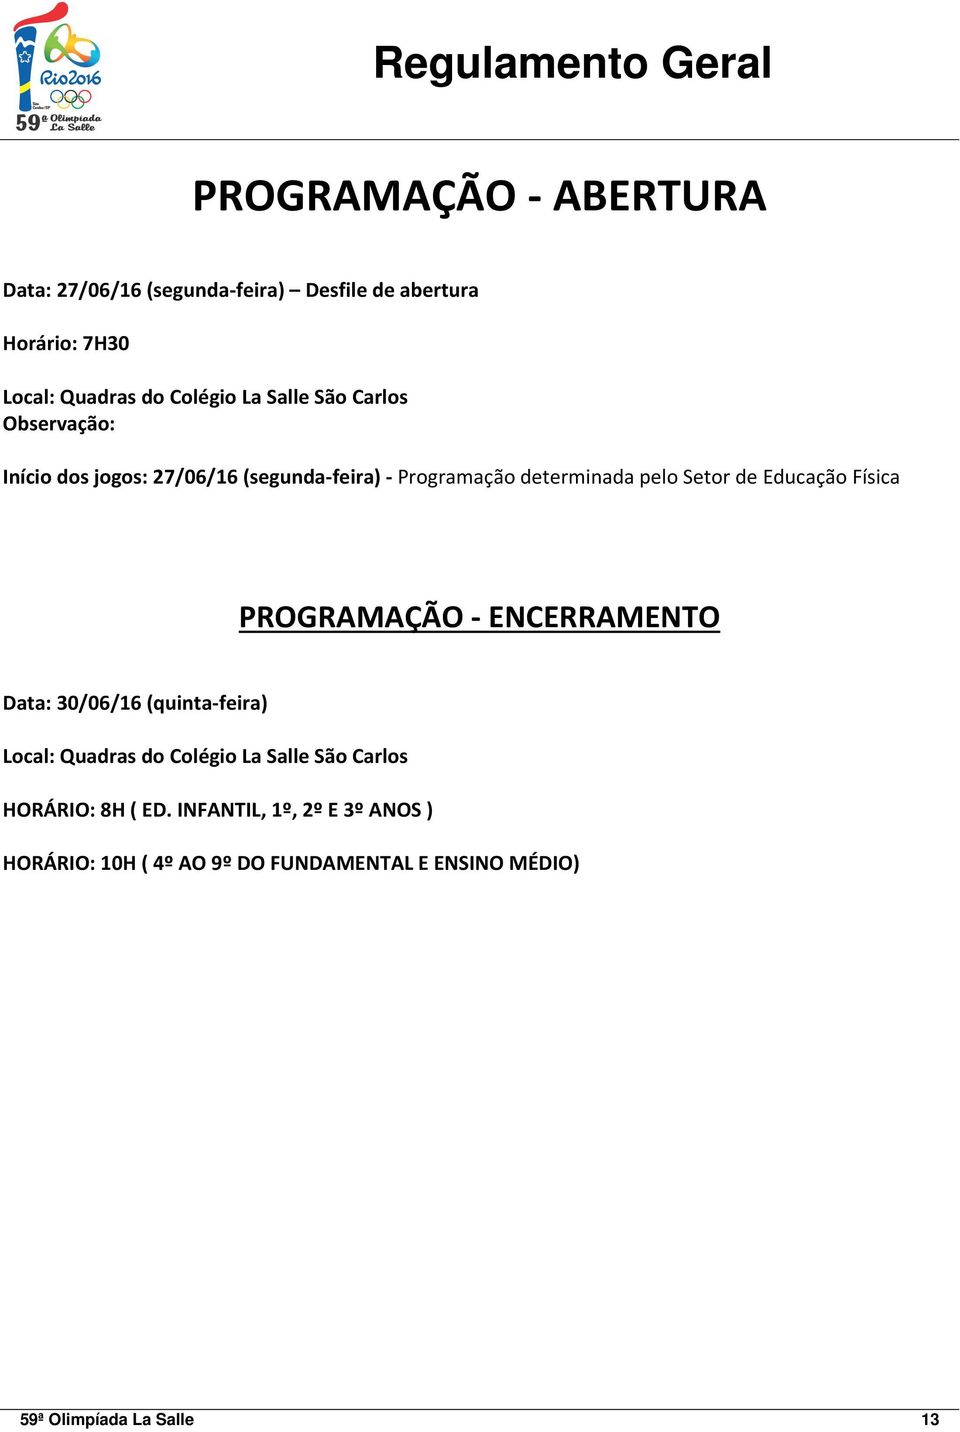 Educação Física PROGRAMAÇÃO - ENCERRAMENTO Data: 30/06/16 (quinta-feira) Local: Quadras do Colégio La Salle São Carlos